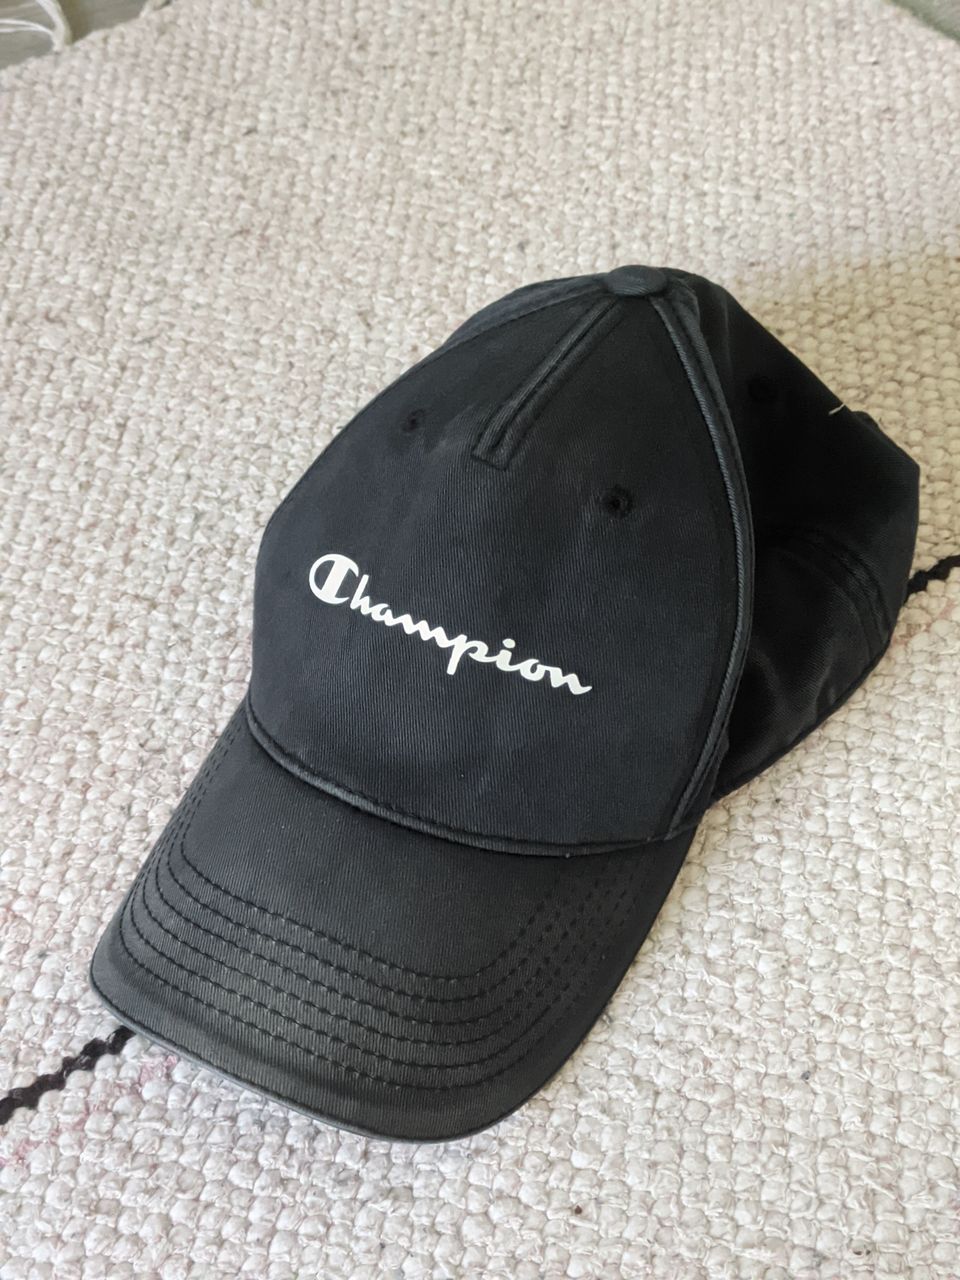 "Champion" cap